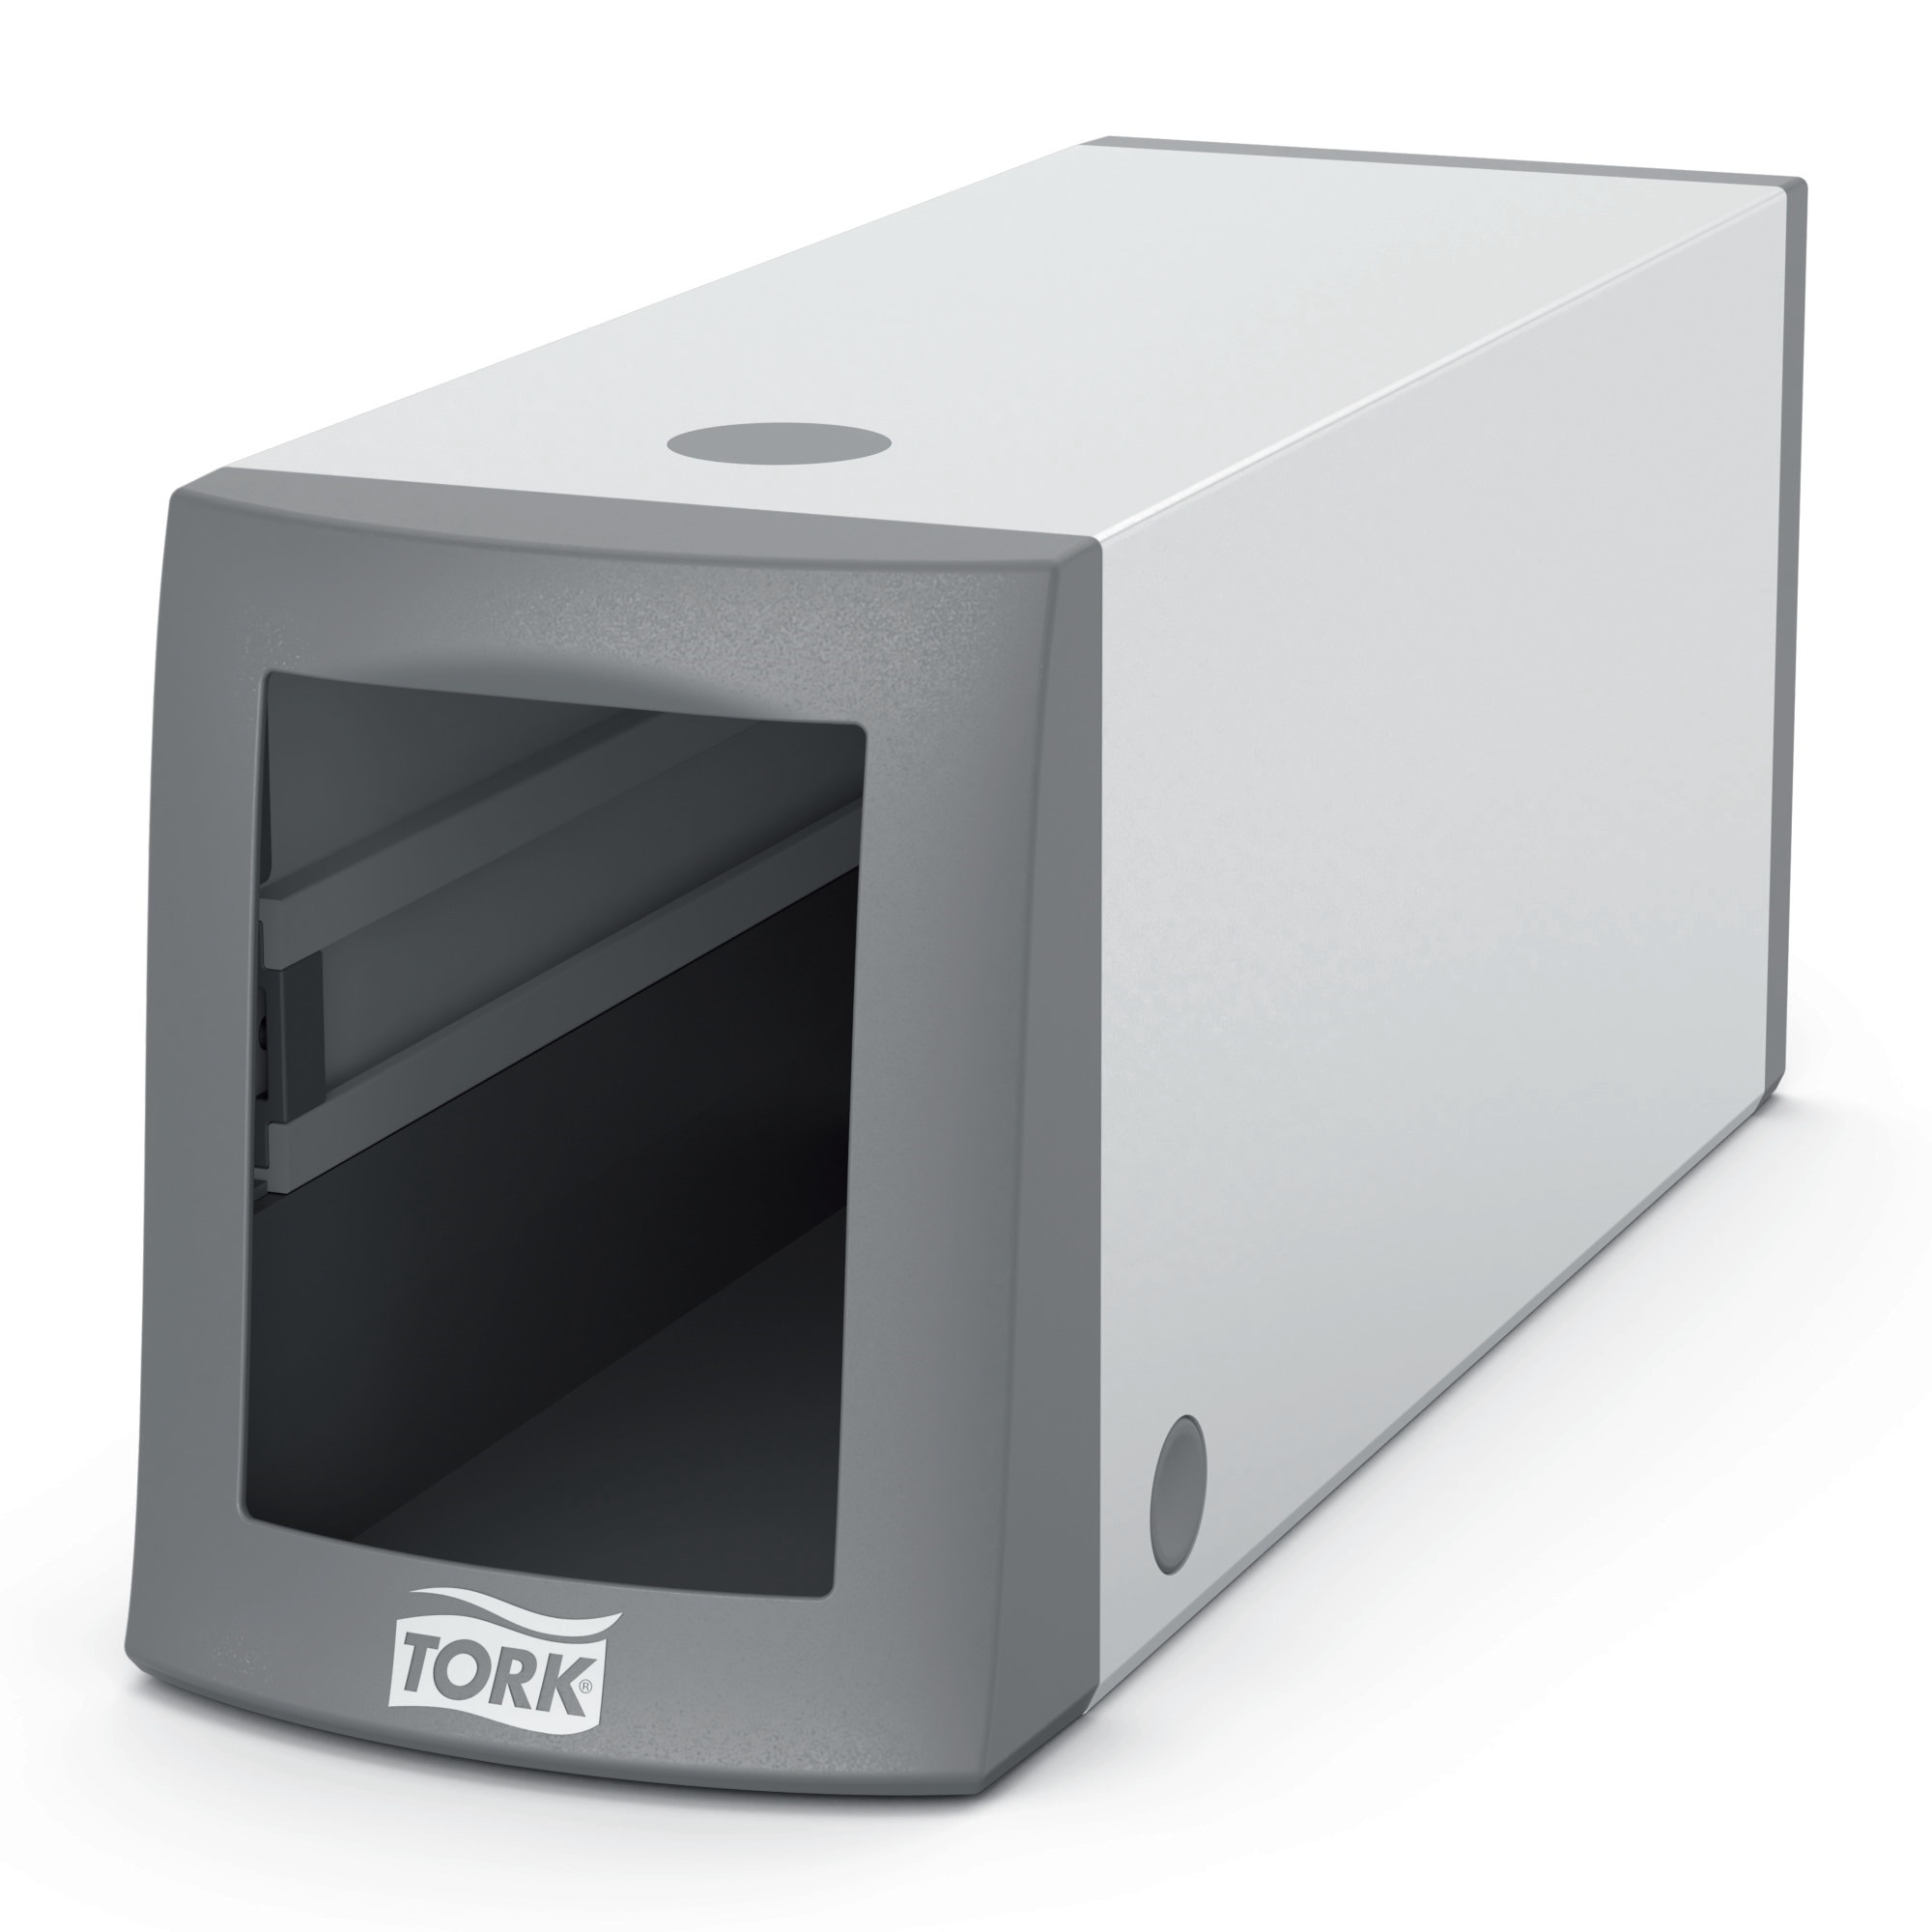 Billede af TORK Dispenser Serviet N2 Disk Gra Plast 13,4 x 10,5 x 31,1 cm (271700)